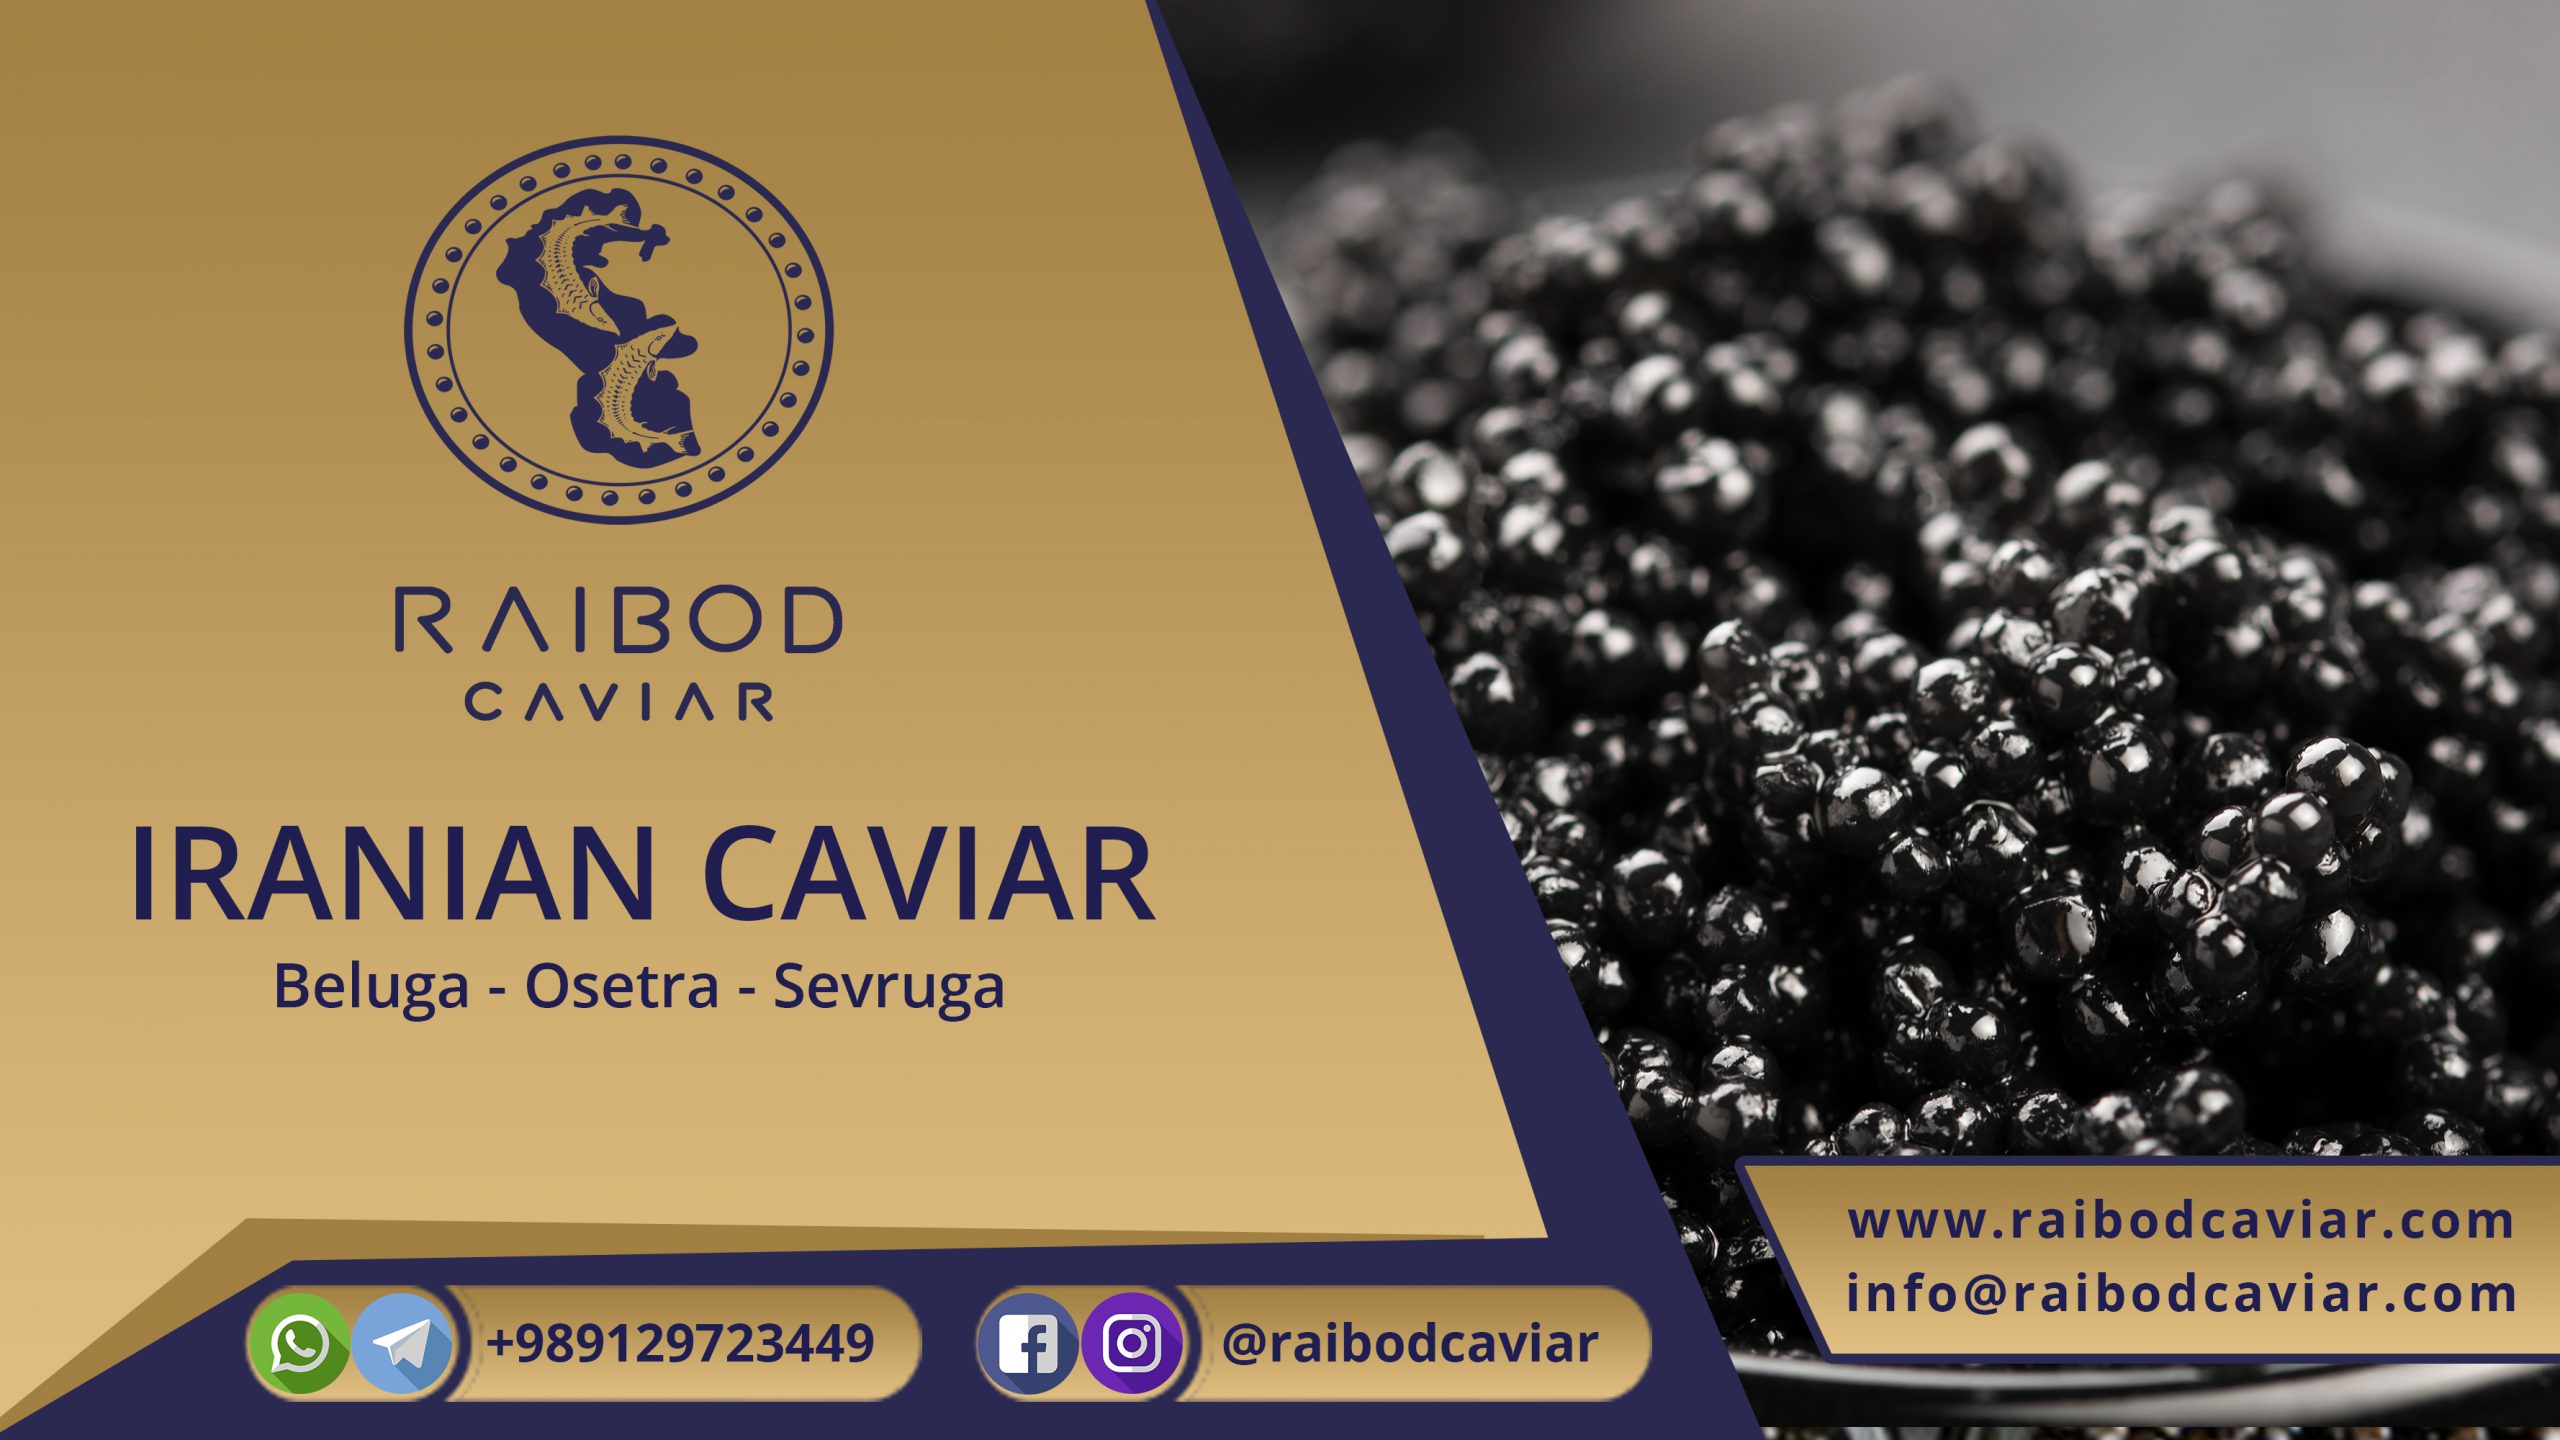 Caviar sales centers